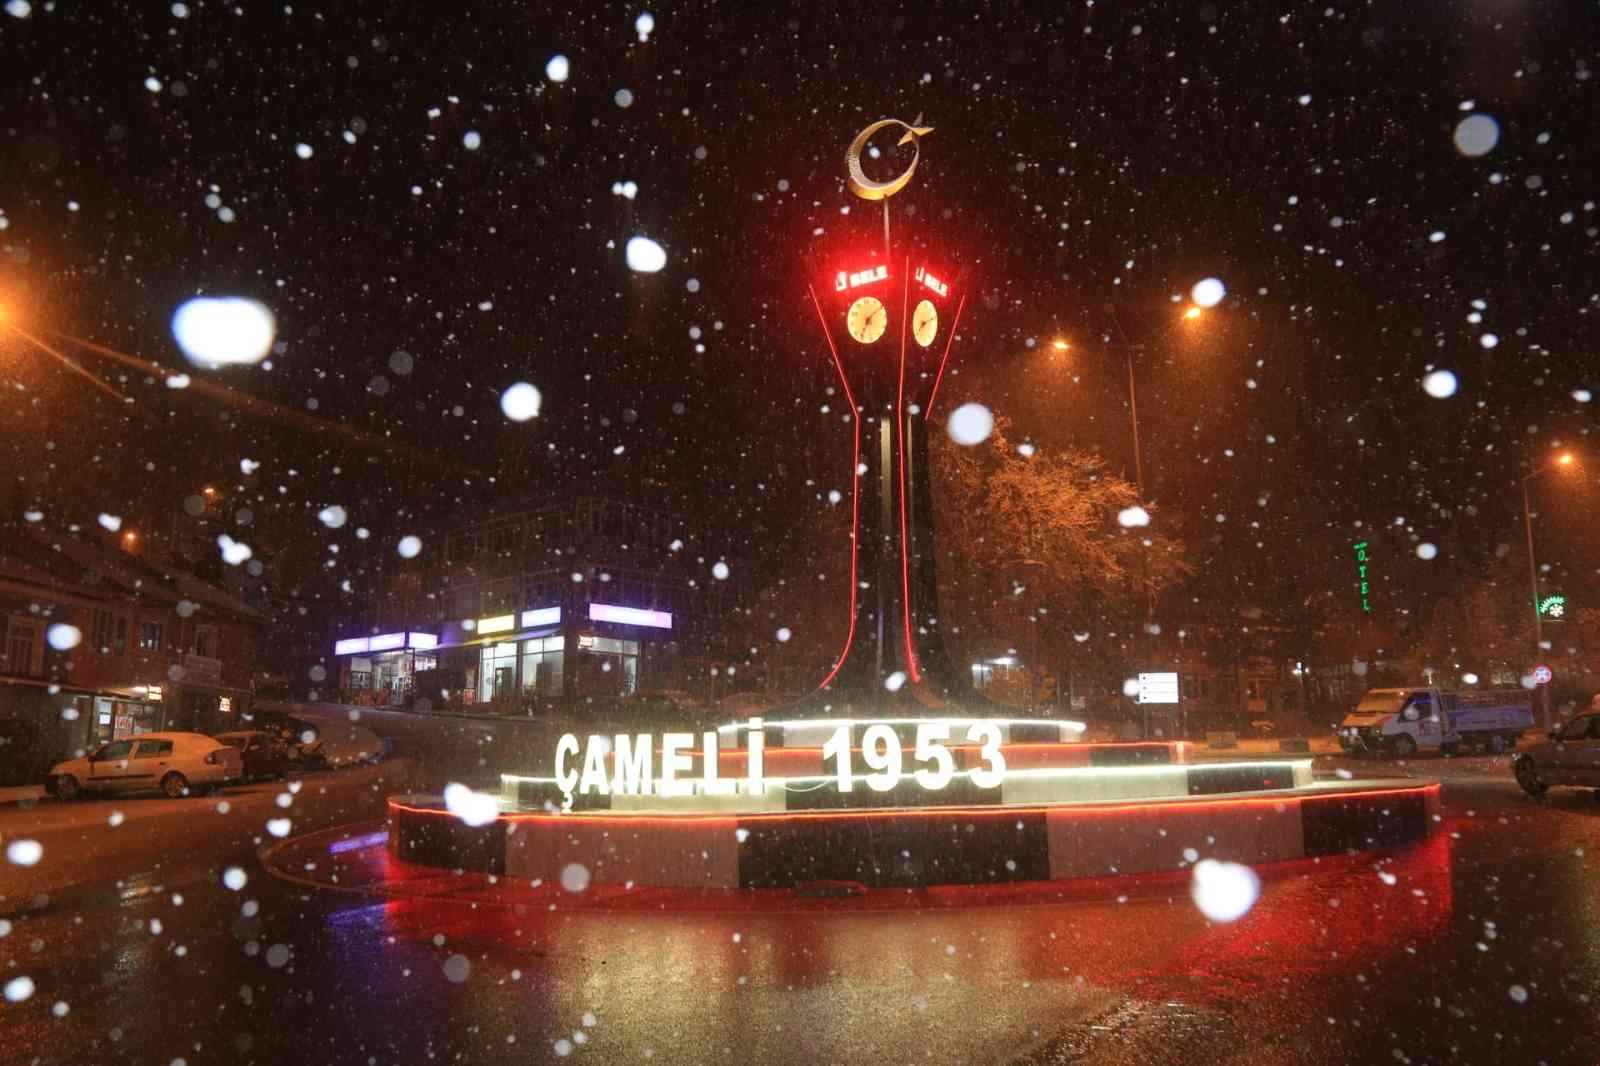 Denizli kent merkezine beklenen ilk kar düştü #denizli